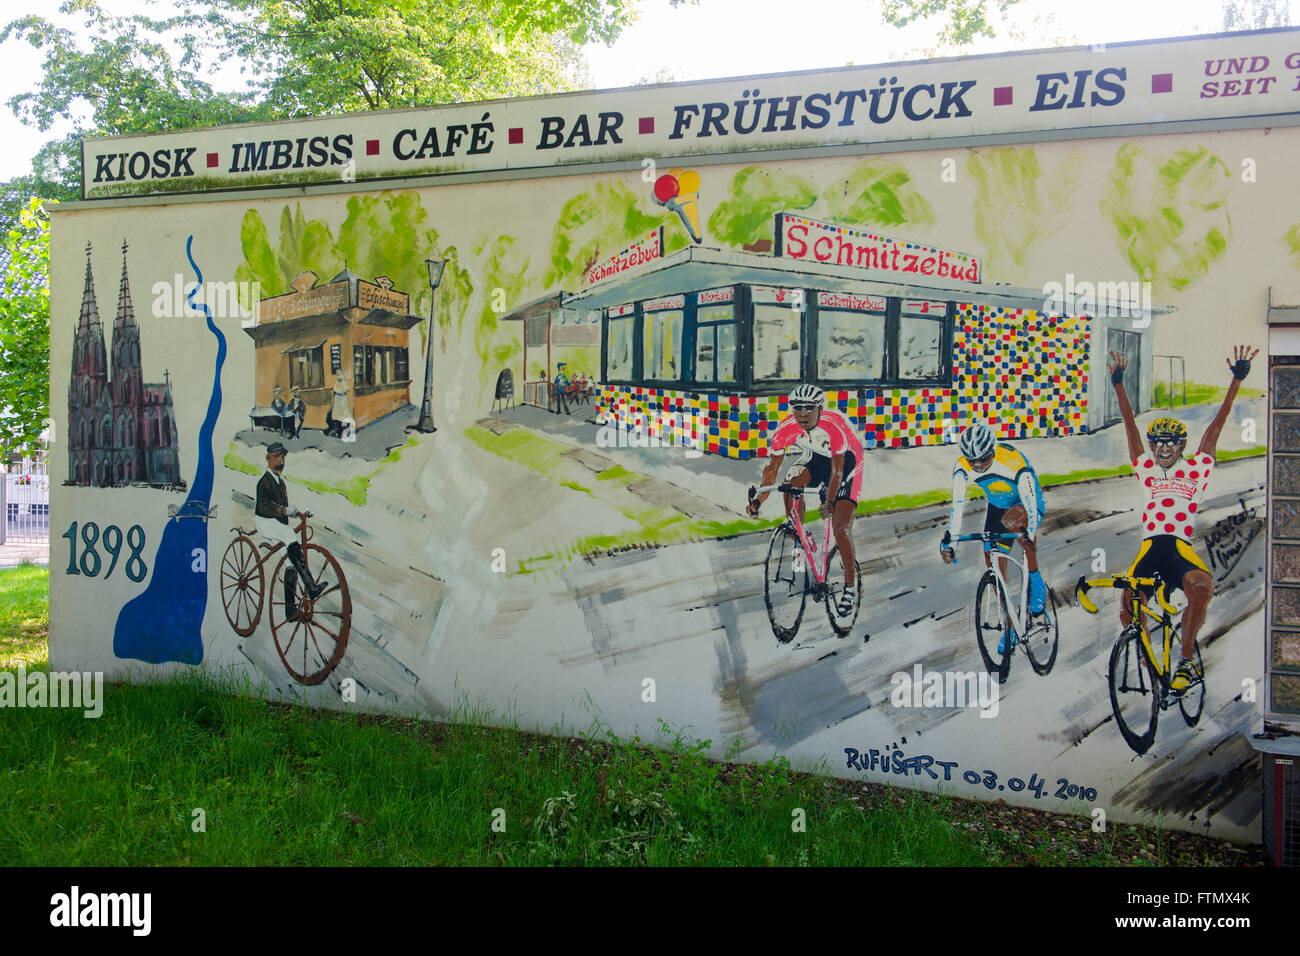 Köln, Rath, Rather Mauspfad, Wandgemälde an der Schmitzebud Kult-Treff der Radsportfans, Wanderer, Spaziergänger und Freizeitspo Stock Photo